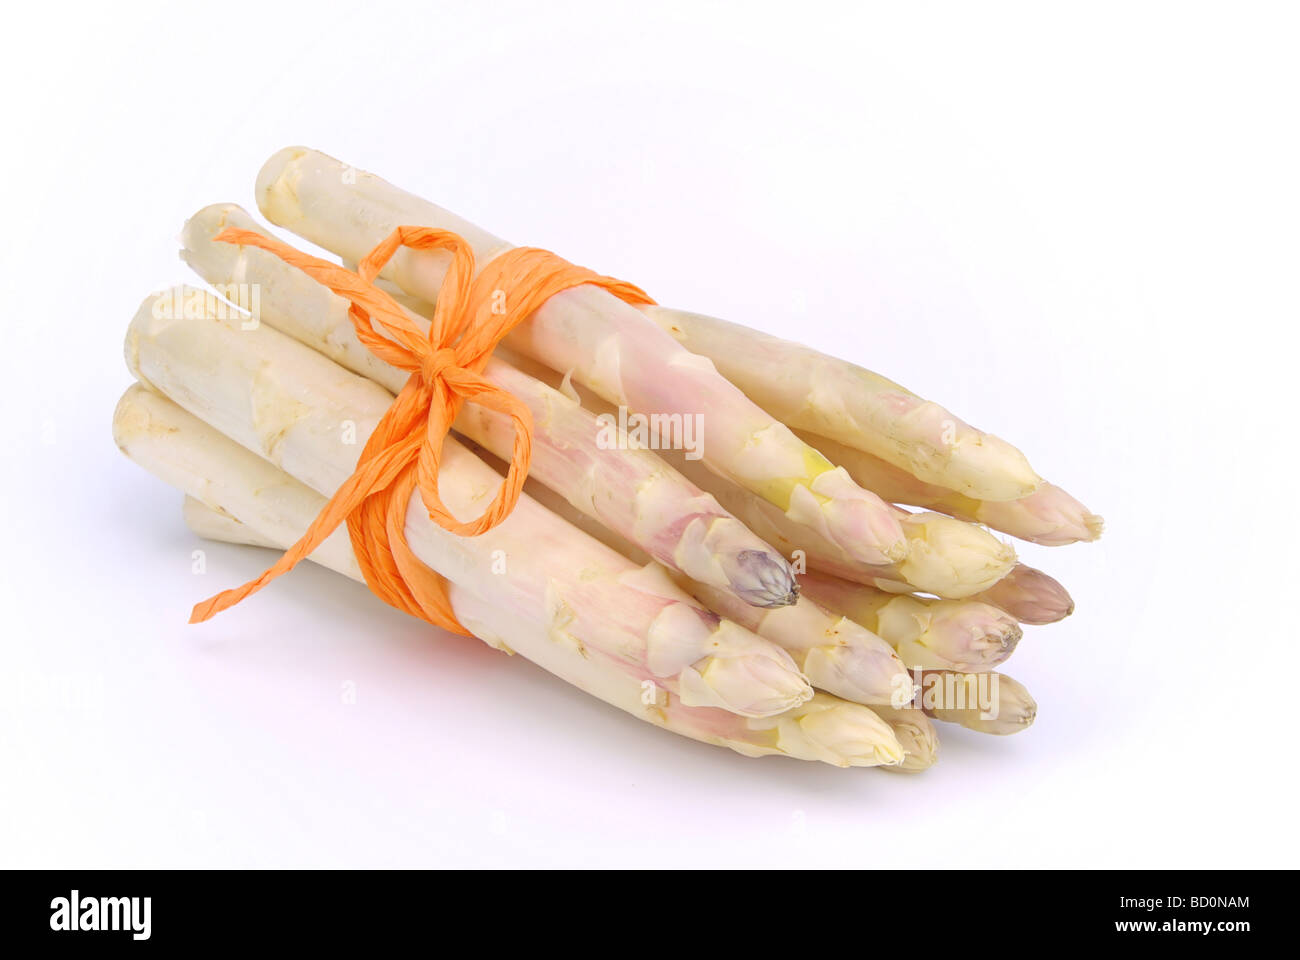 Spargel asparagus 05 Stock Photo